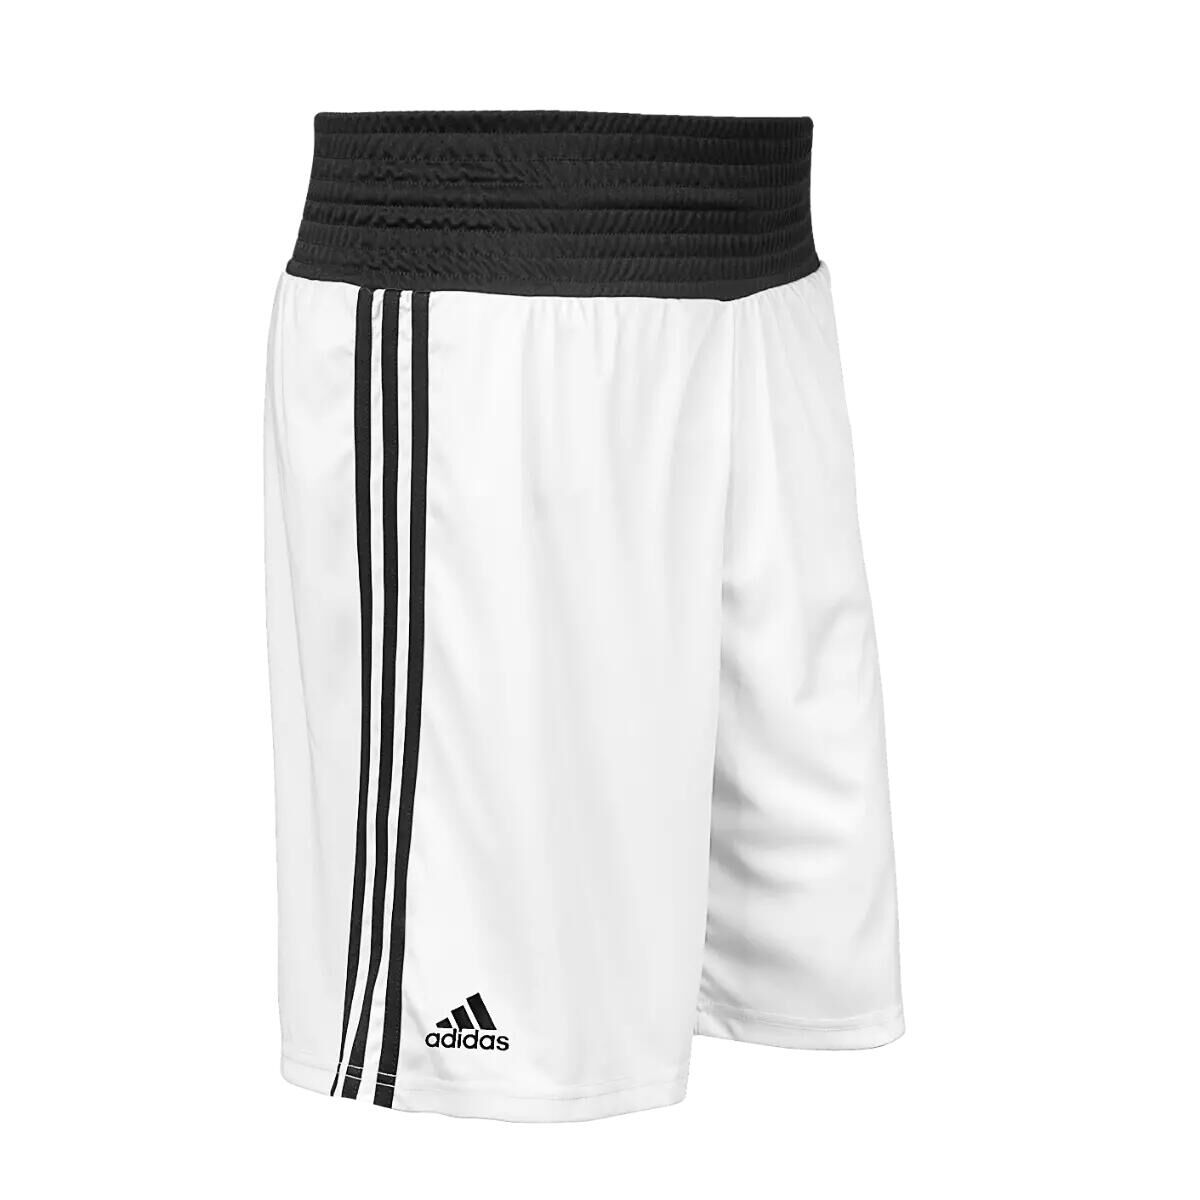 ADIDAS Adidas Base Boxing Shorts - White